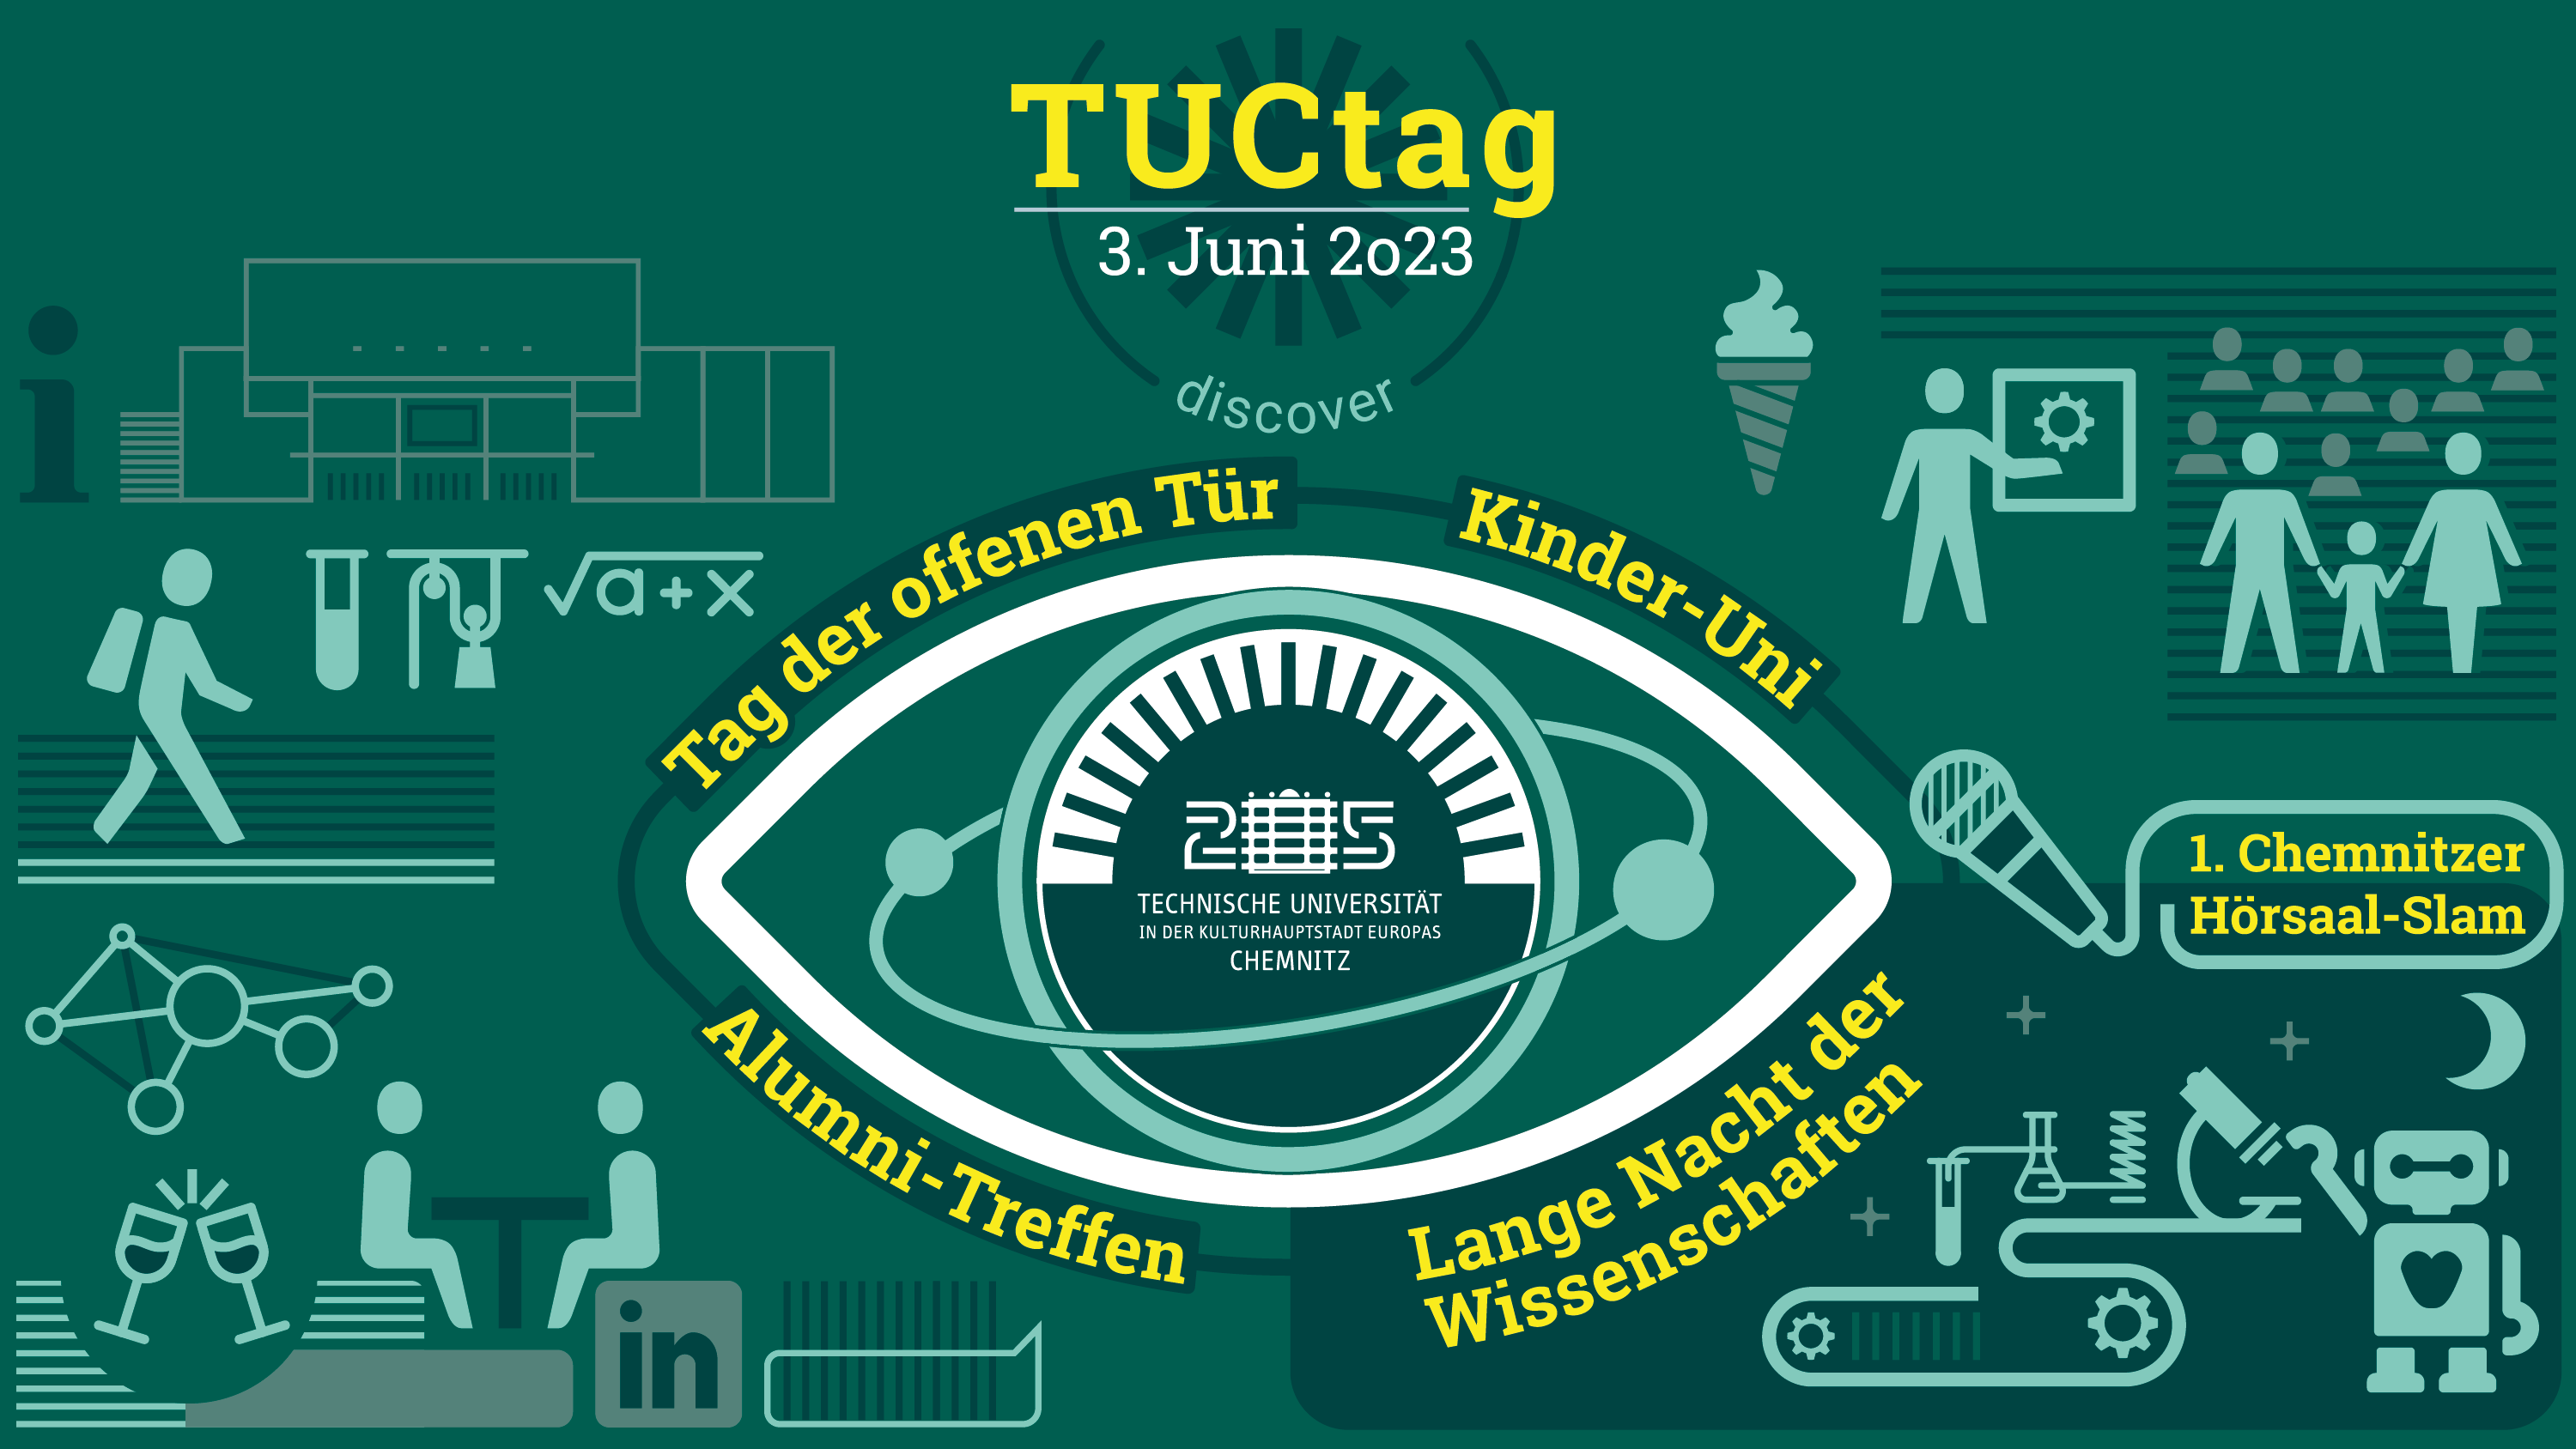  TUCed @ Tag der offenen Tür an der Technischen Universität Chemnitz - Banner